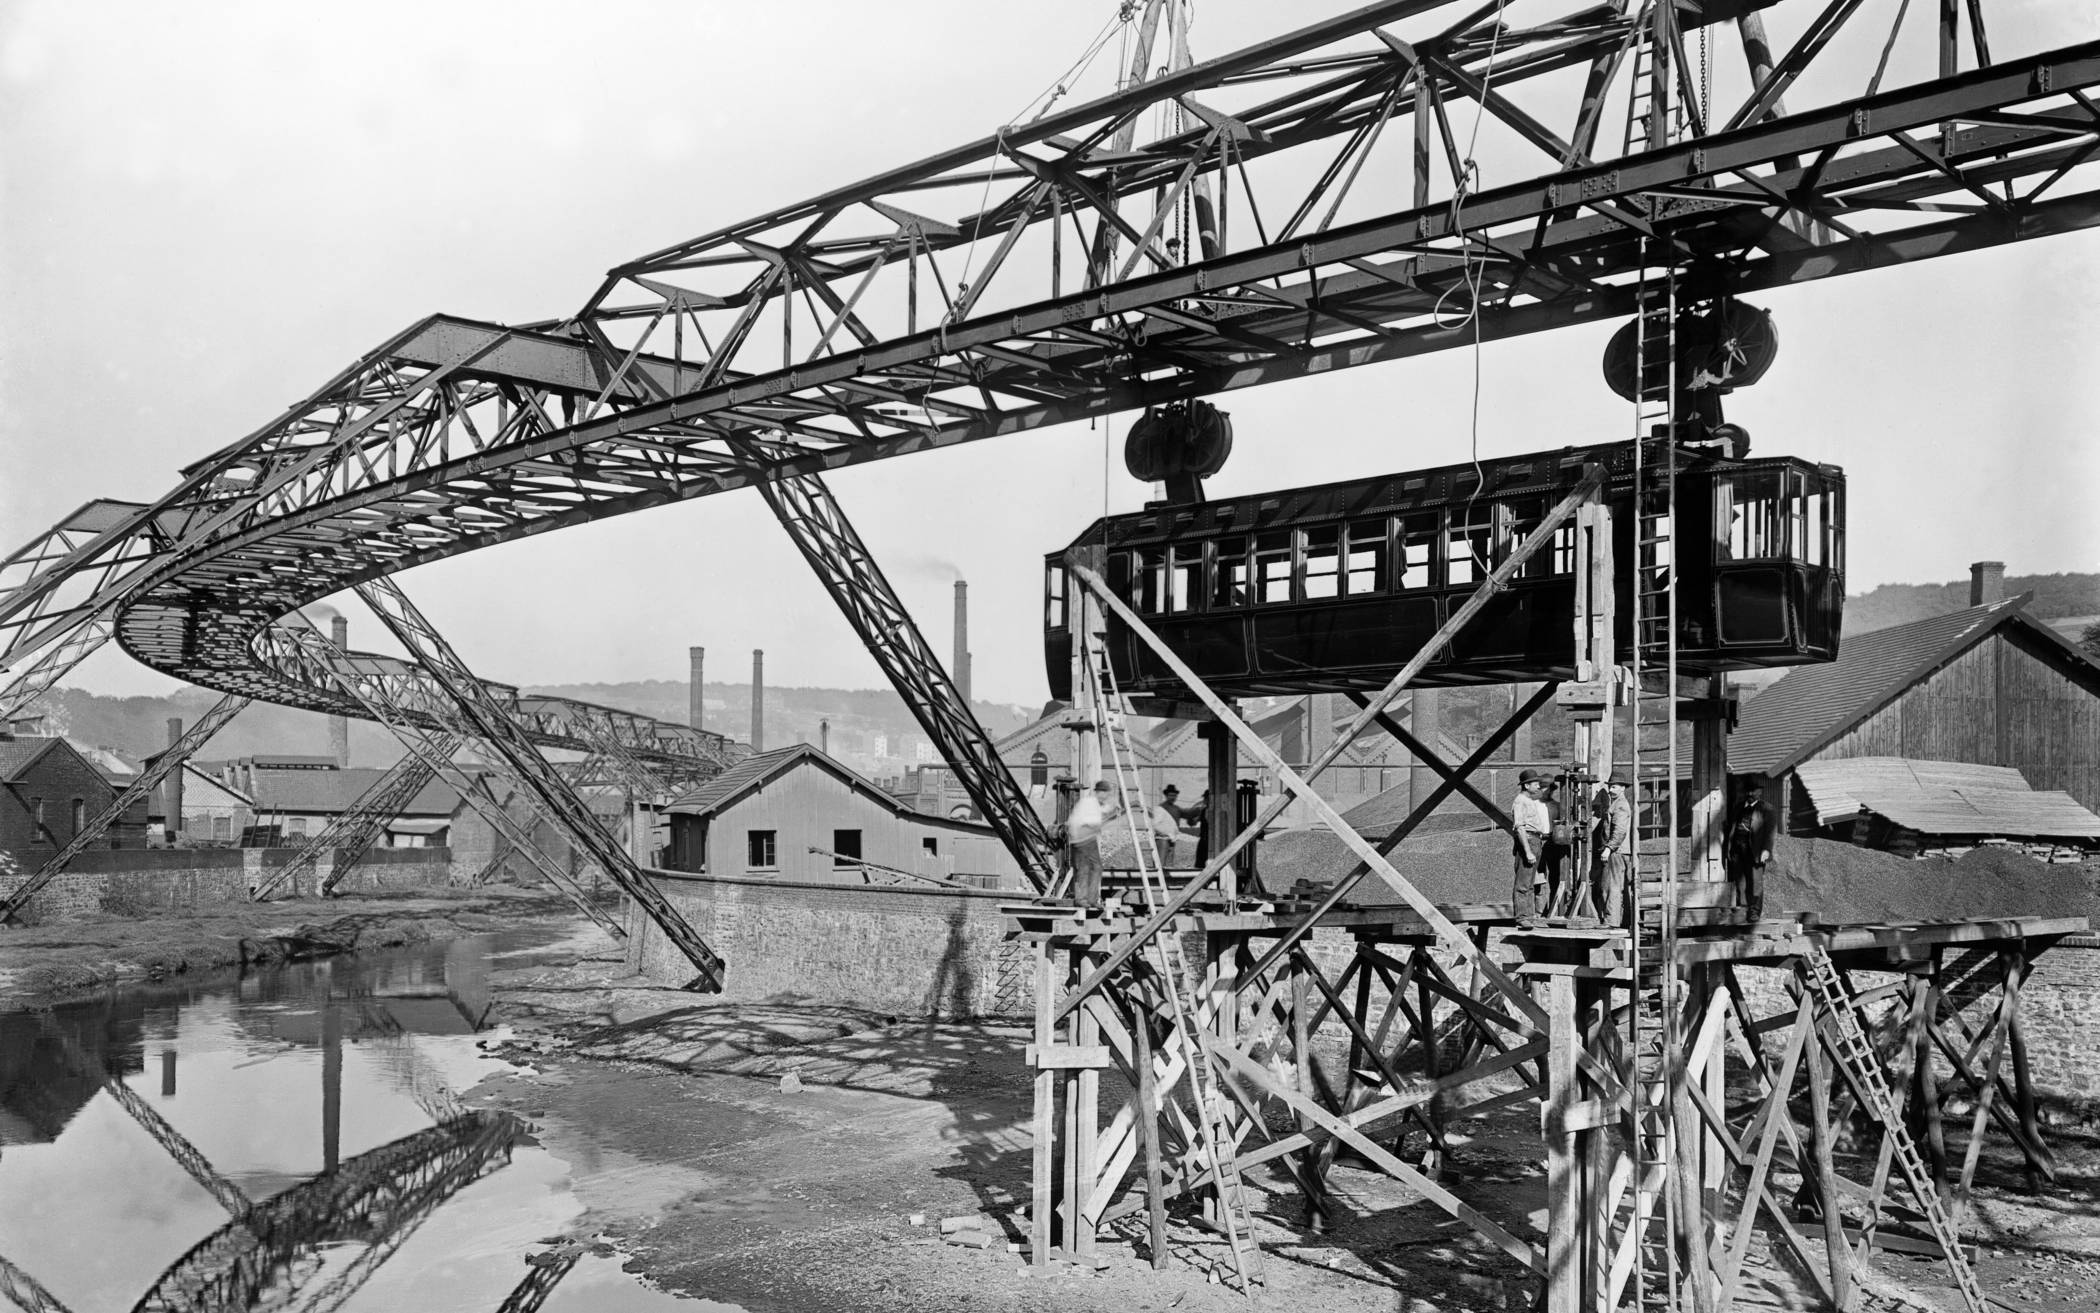  Bereits 1898 wurden die ersten Probewagen in Varresbeck ans Gerüst gehängt. 